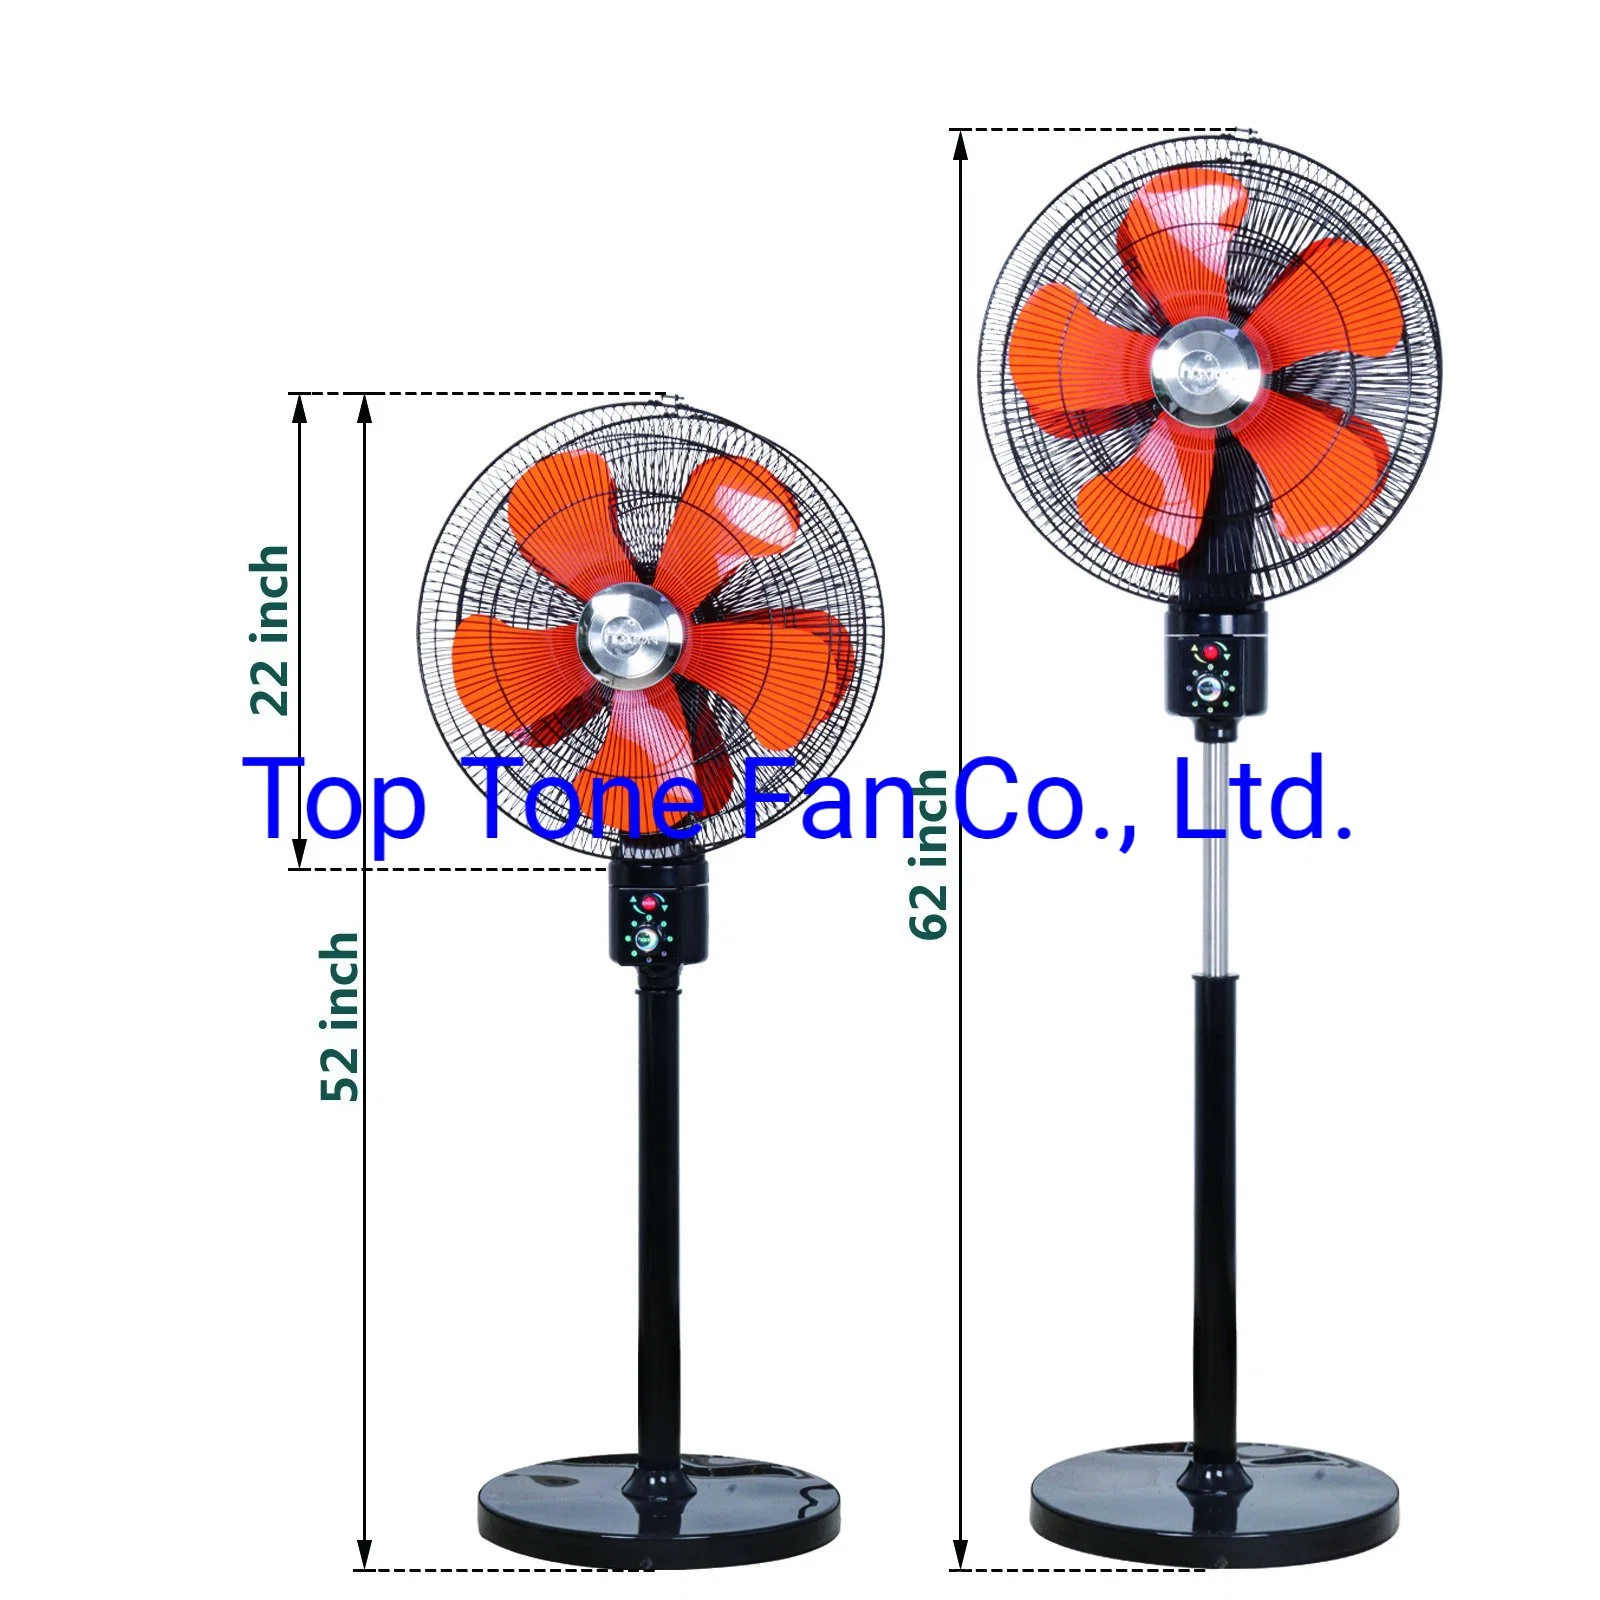 Dual Heads Stand Fan with 360 Degree Oscillation Electrical Fan Exhaust Fan, Rechargeable Fan, Household Mist Fan, Handheld Fan, Air Circulator Fan.